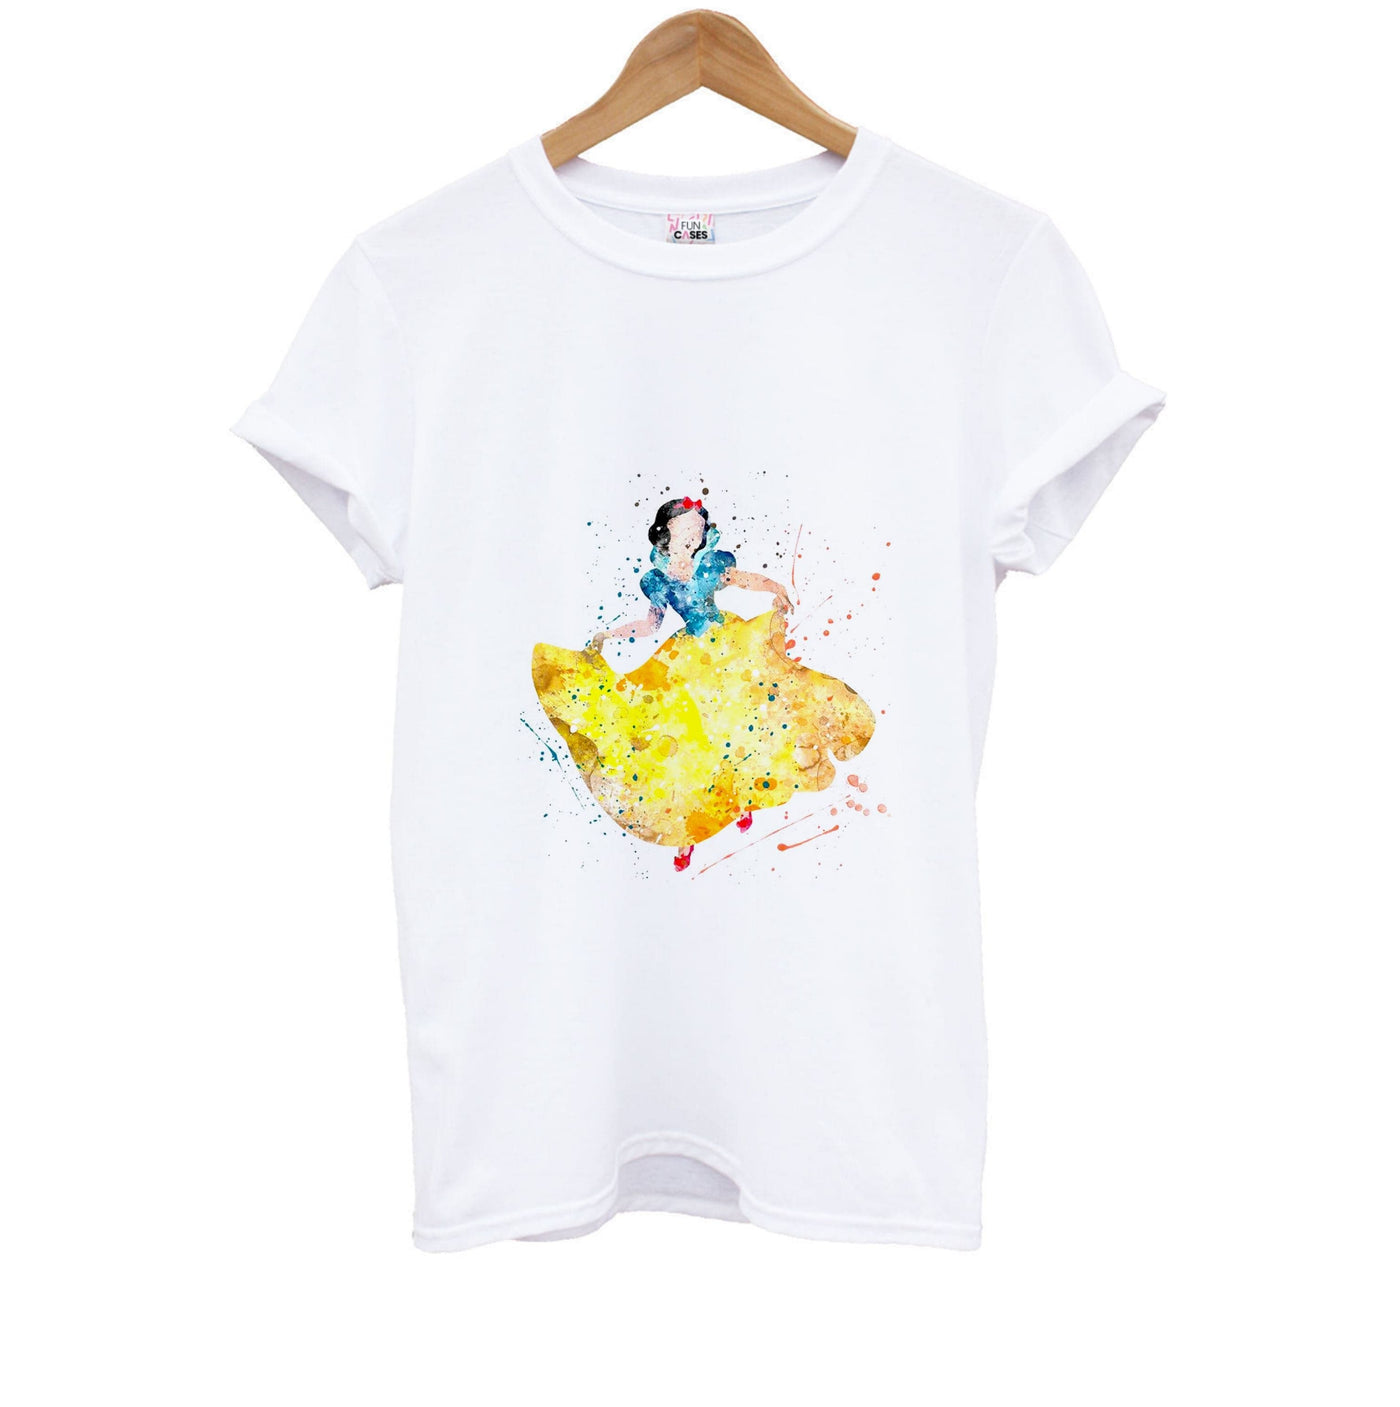 Watercolour Snow White Disney Kids T-Shirt